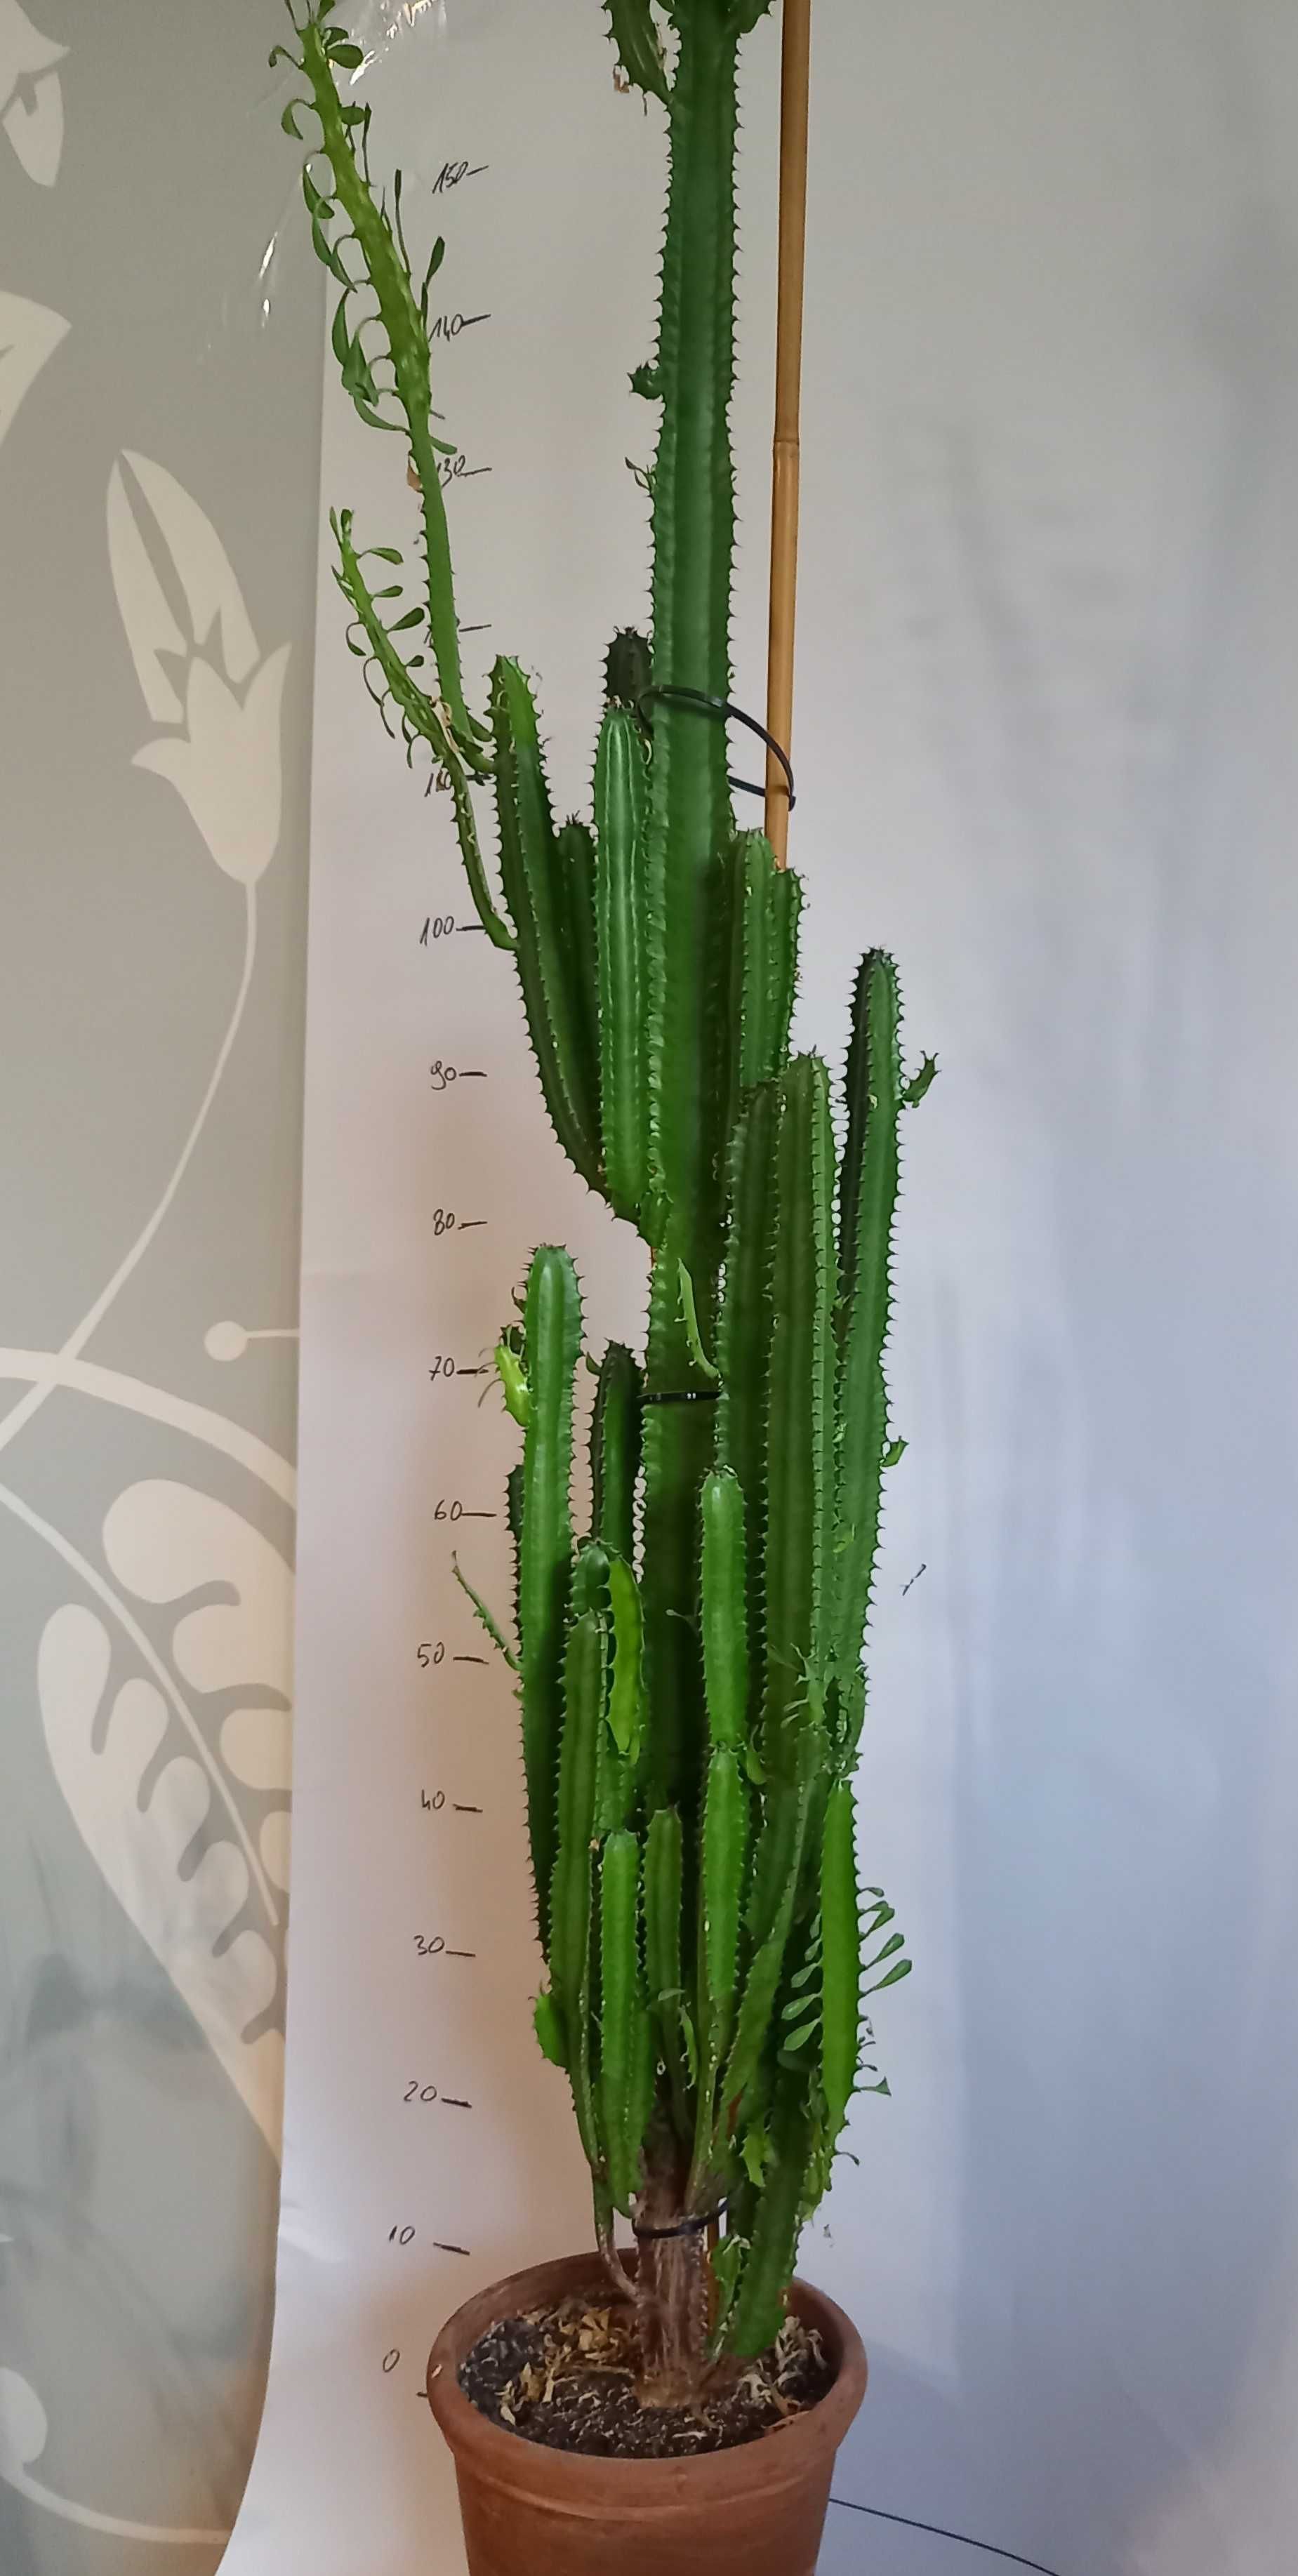 kaktus doniczkowy, około 150 cm wysokości,